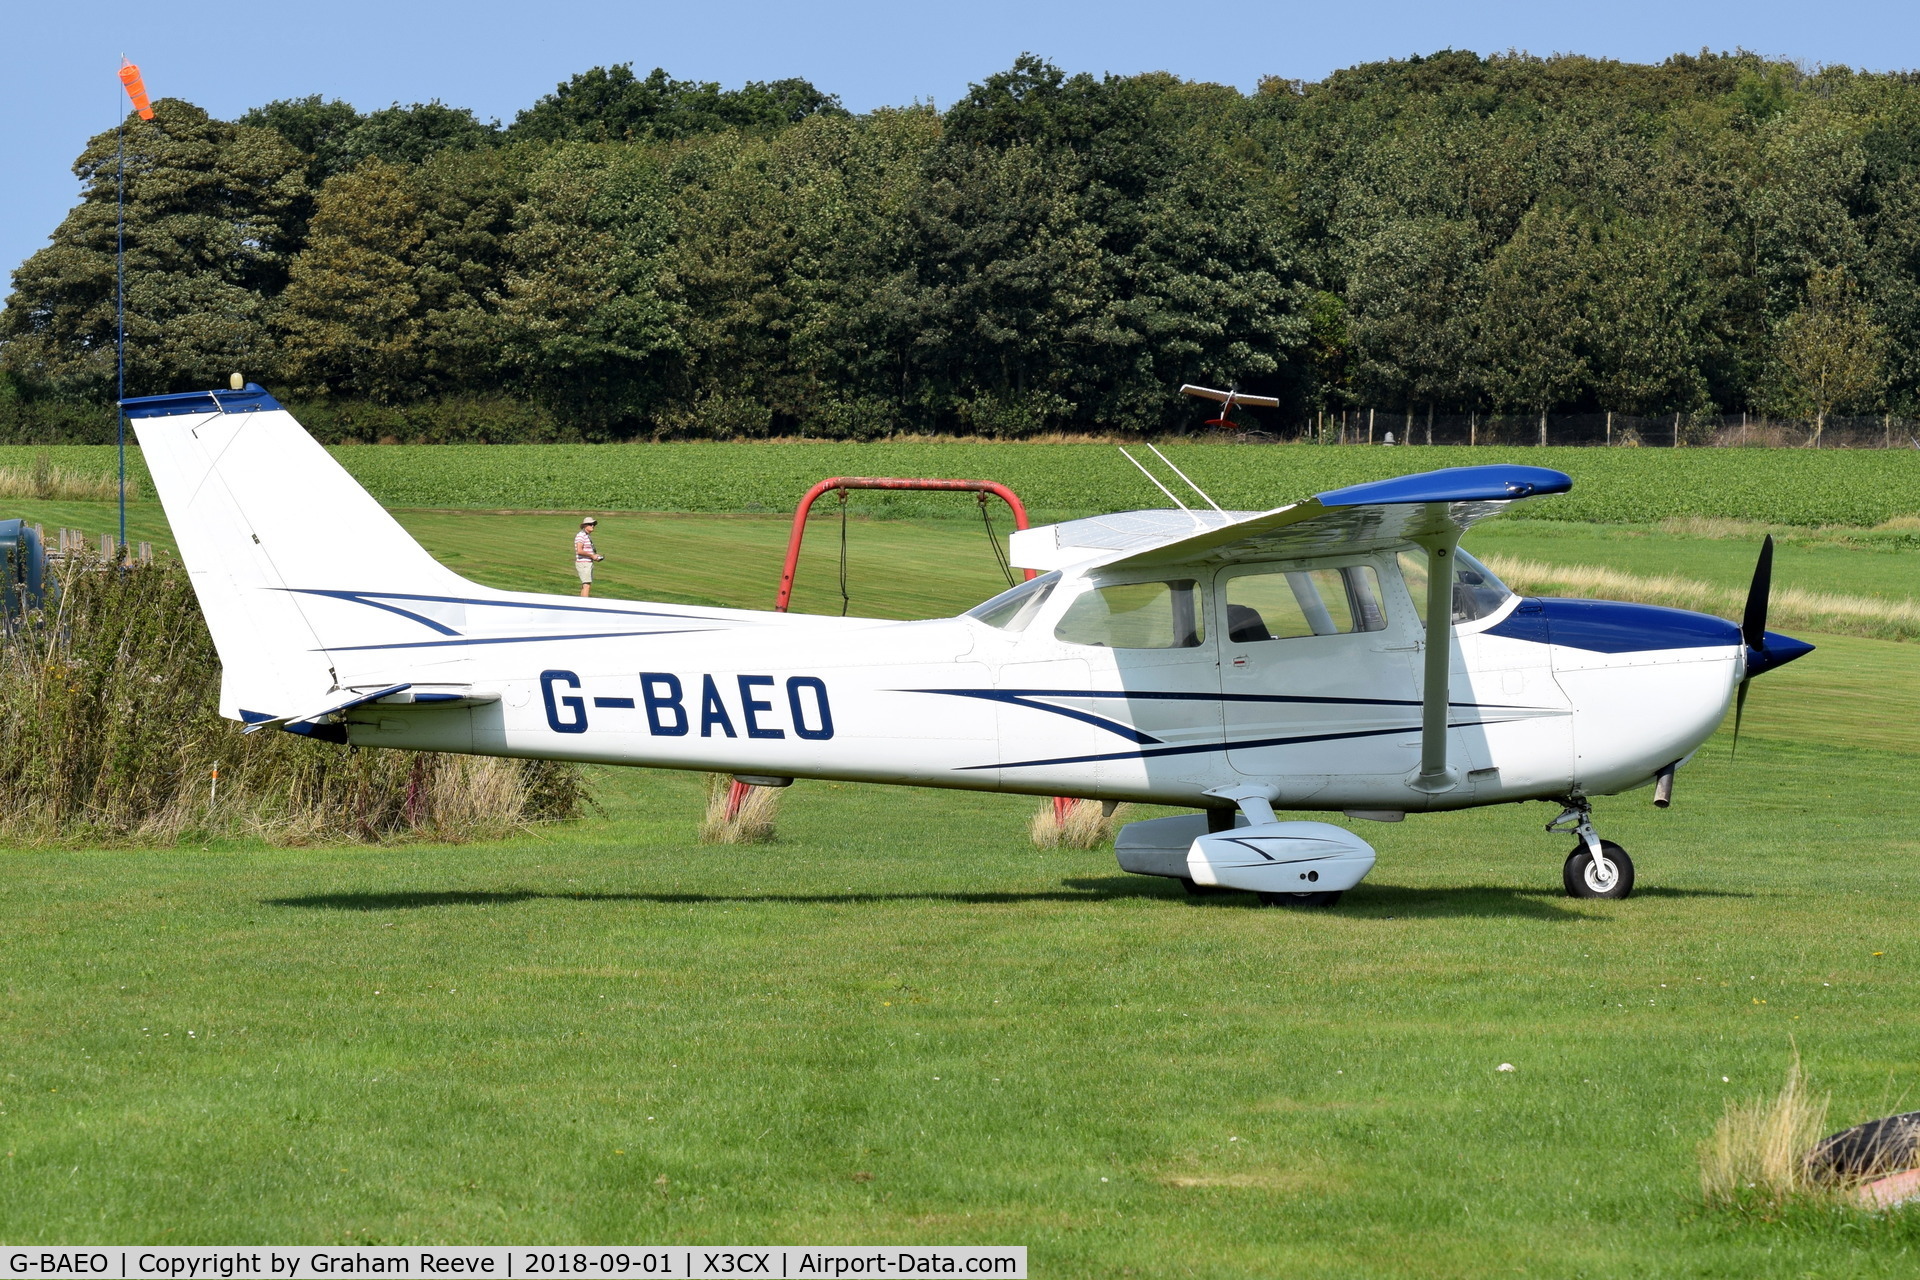 G-BAEO, 1973 Reims F172M Skyhawk Skyhawk C/N 0911, parked at Northrepps.